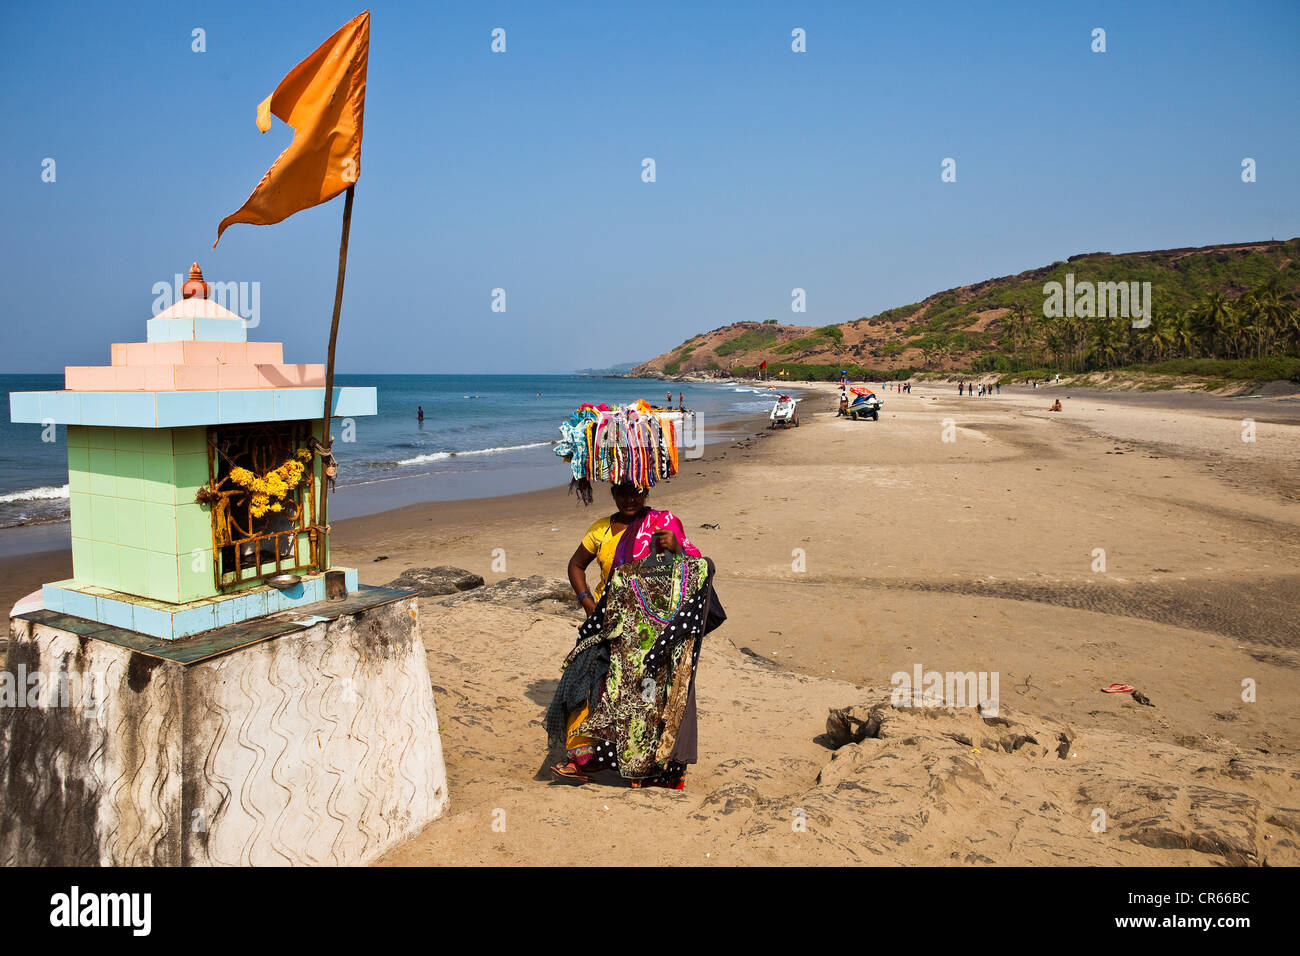 India, Goa State, Vagator, the beach Stock Photo